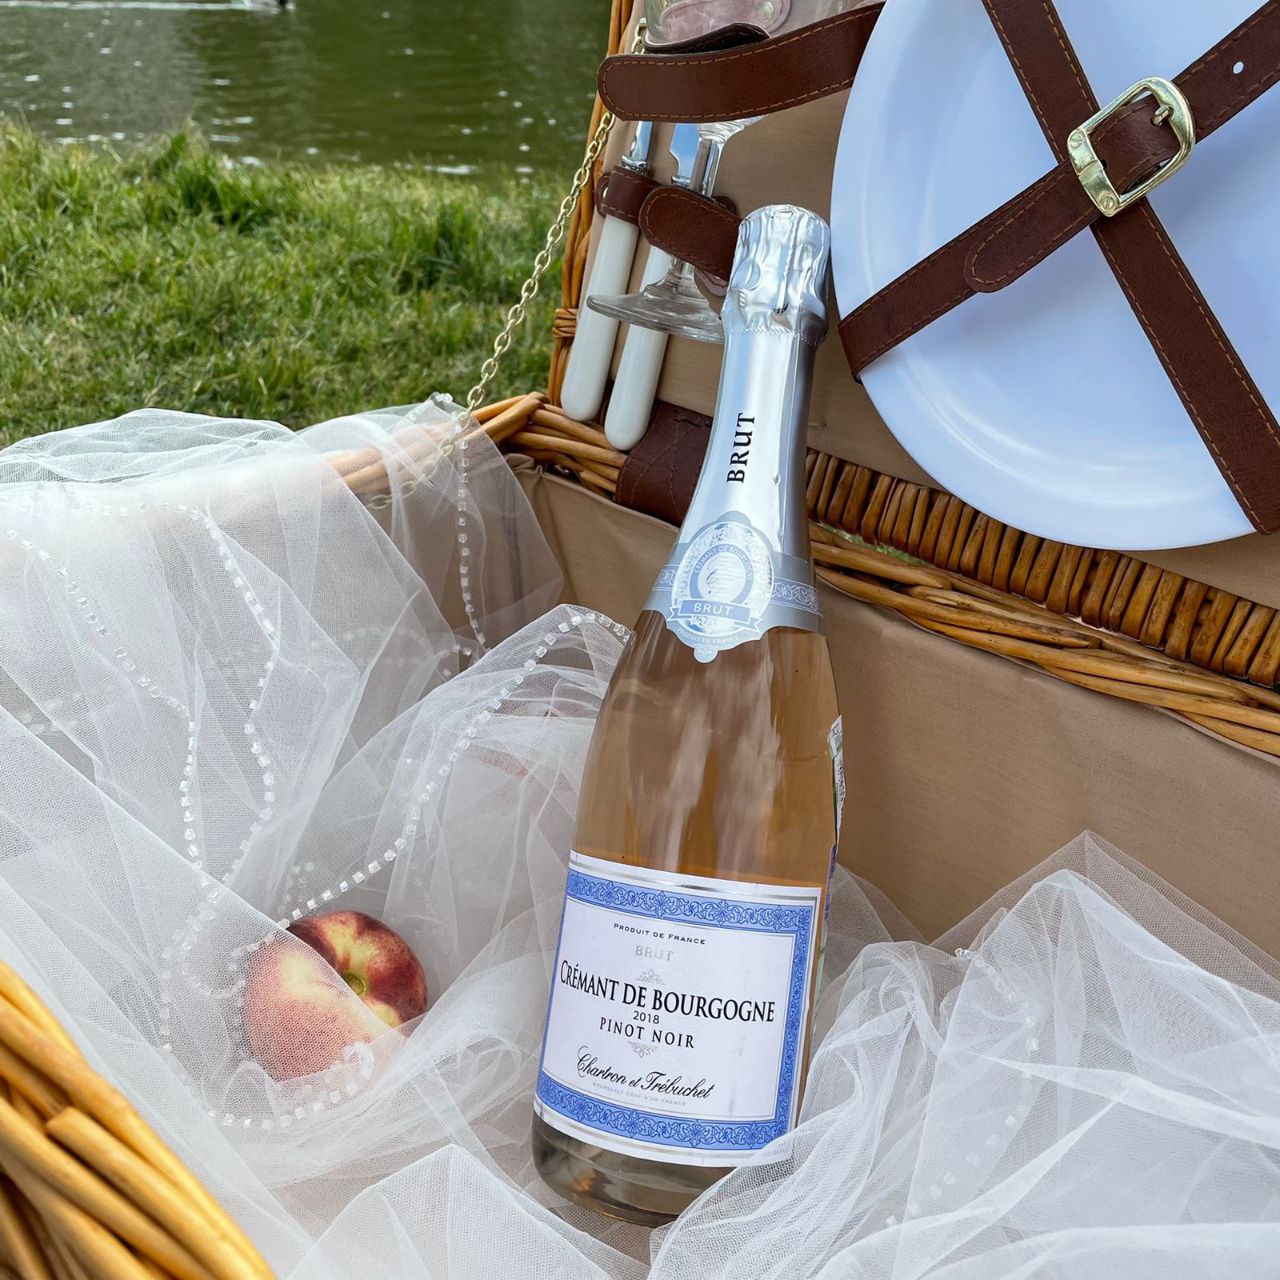 Игристый Cremant de Bourgogne - прекрасная альтернатива шампанскому!